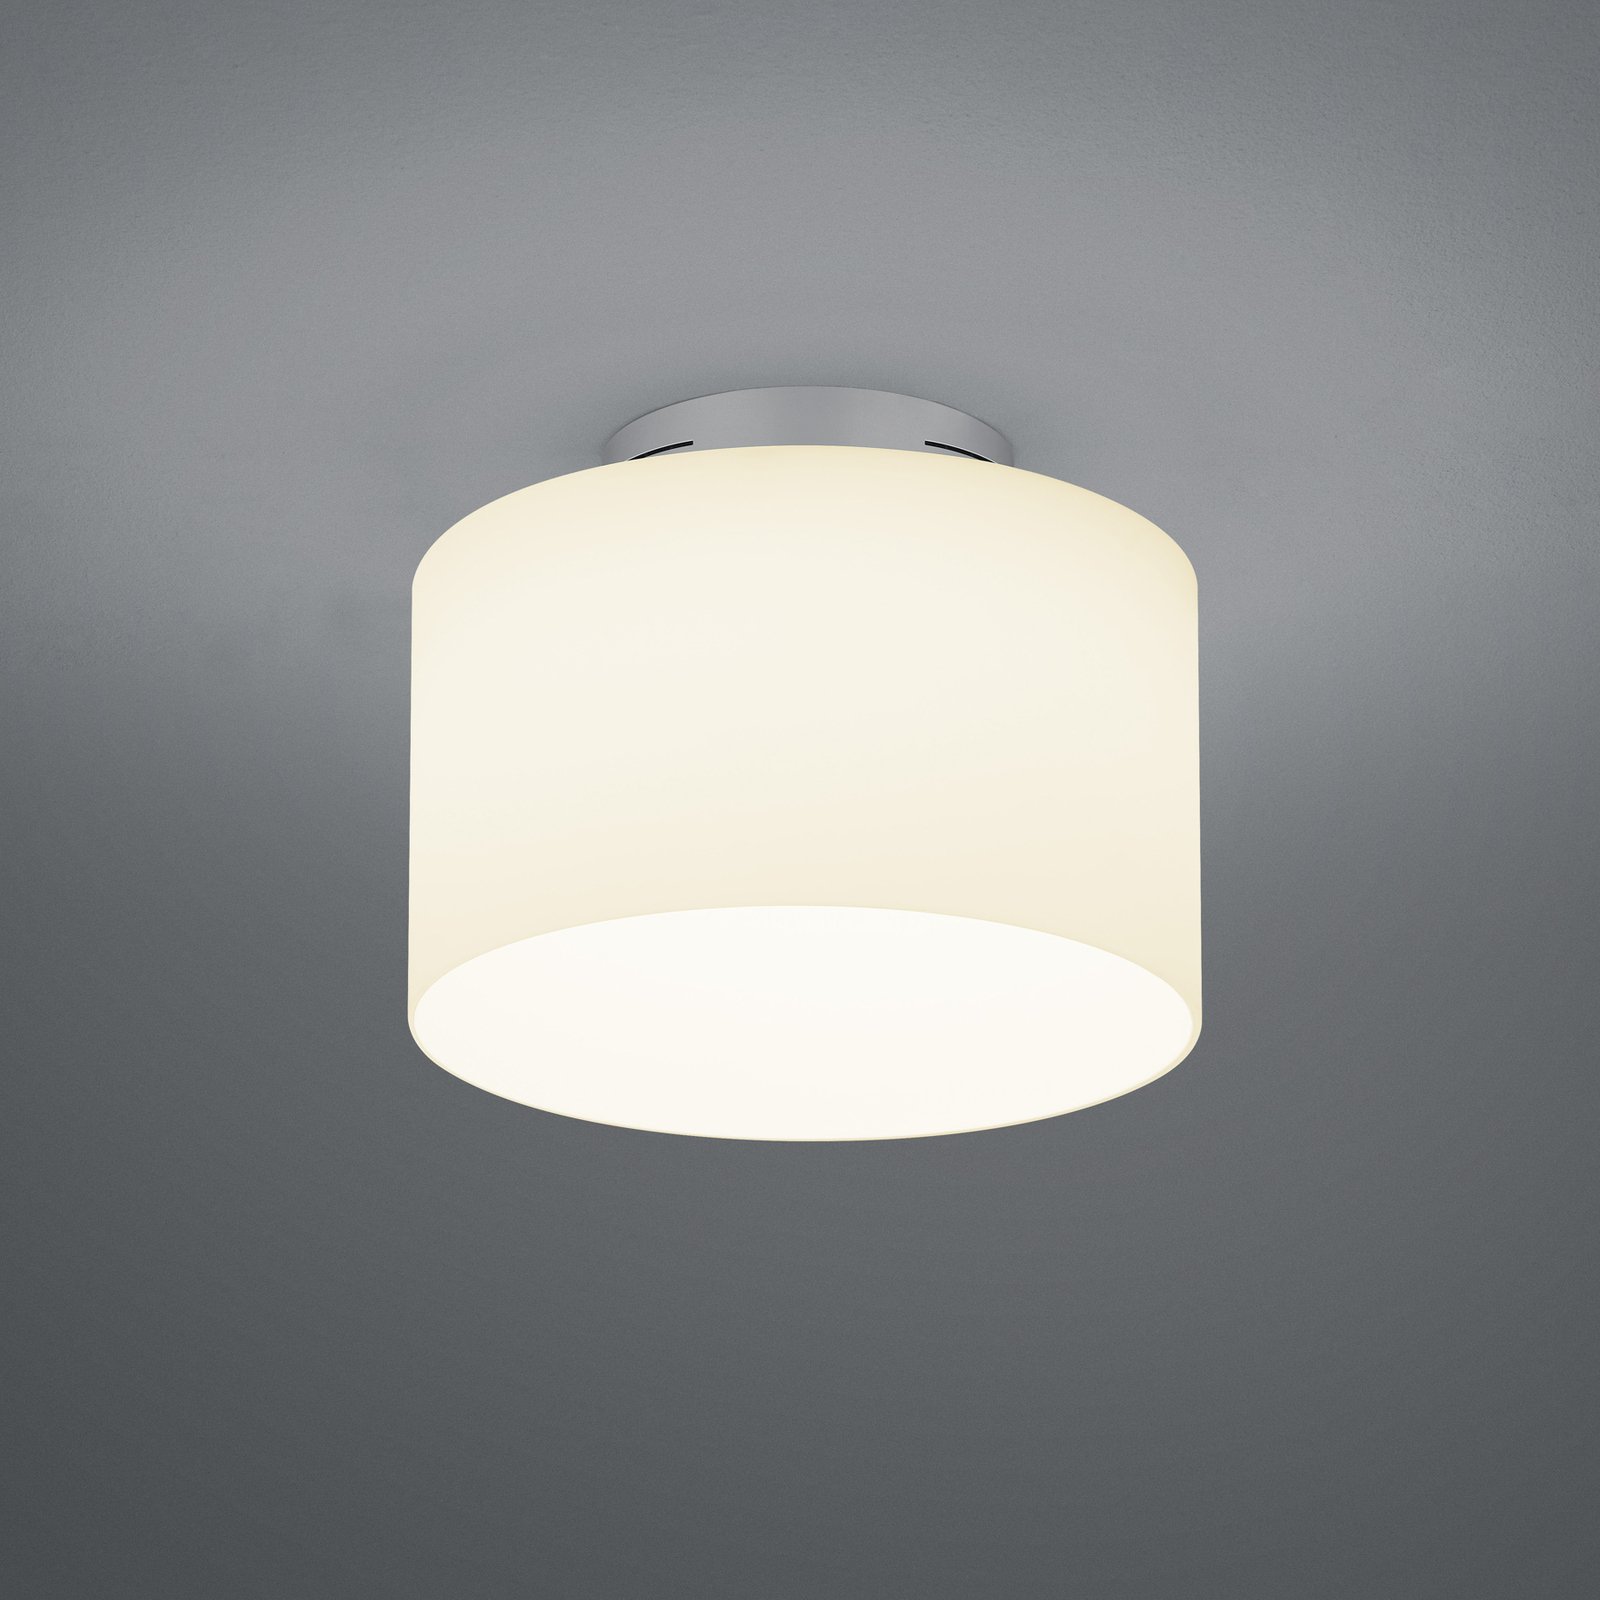 BANKAMP Grand Opal loftslampe i aluminium Ø 32 cm